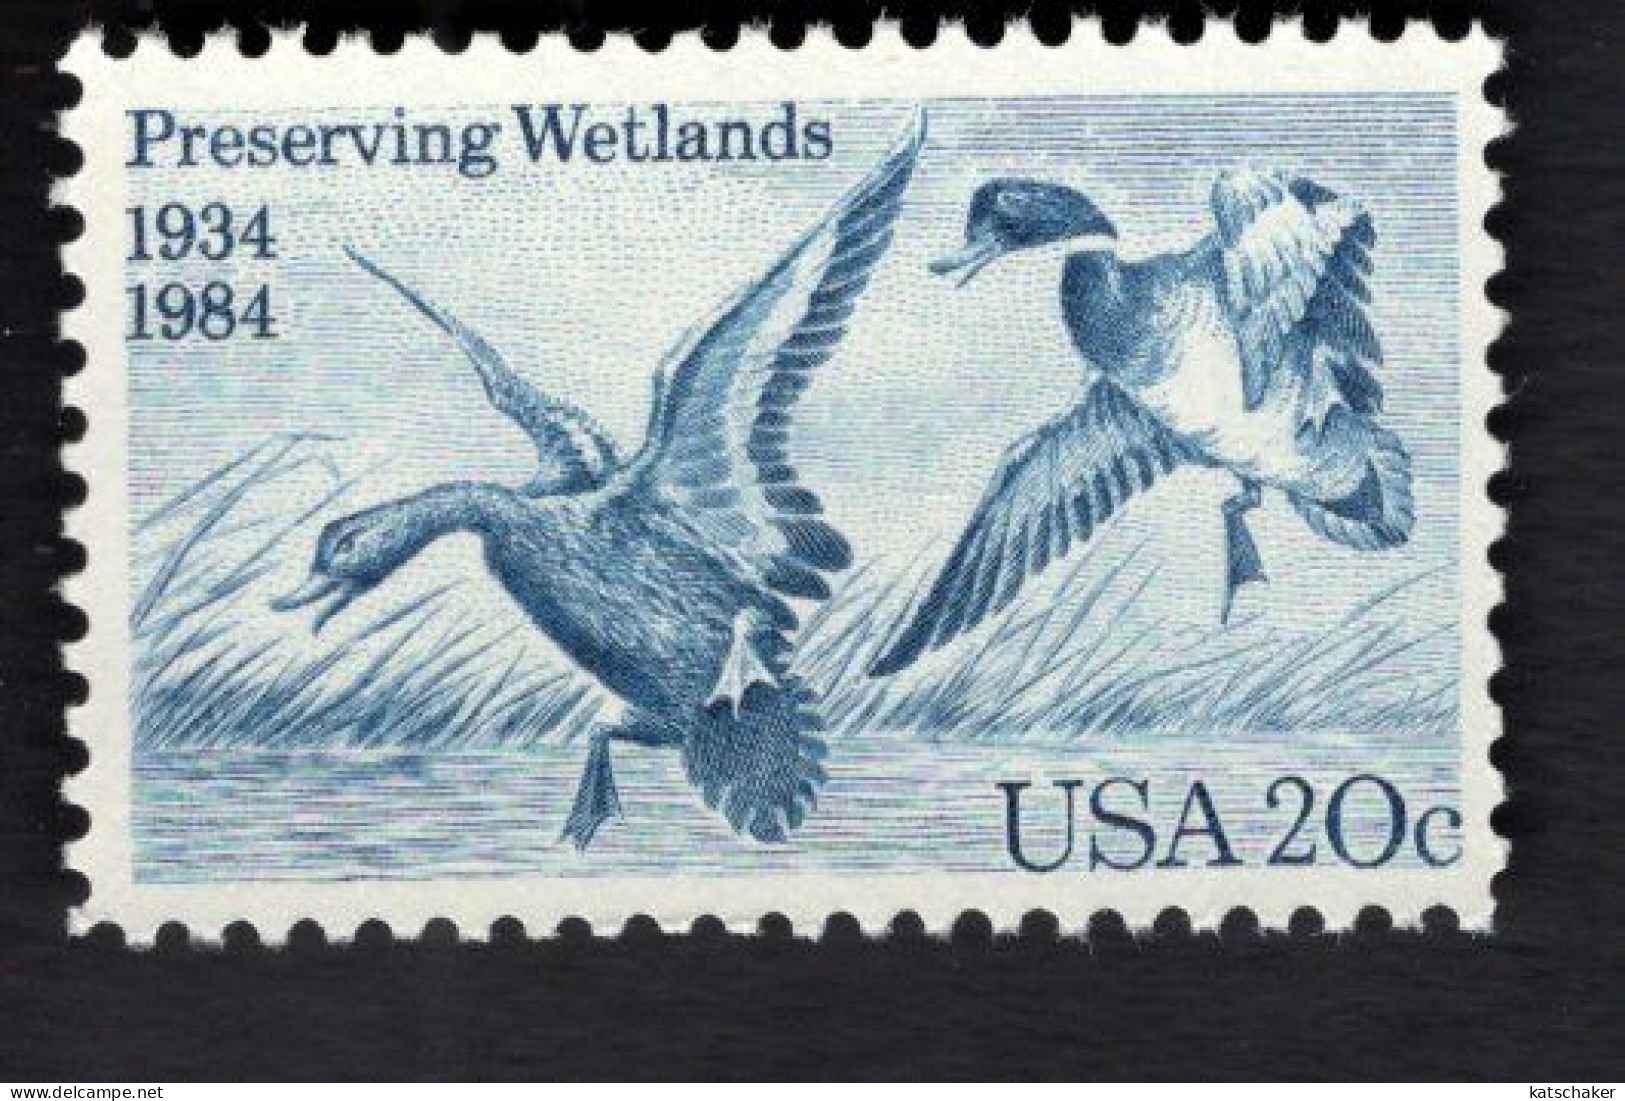 200895299 1984 SCOTT 2092 (XX) POSTFRIS MINT NEVER HINGED - WATERFOWL PRESERVATIONC ACT - 50TH ANNIV - BIRDS - WETLANDS - Ungebraucht